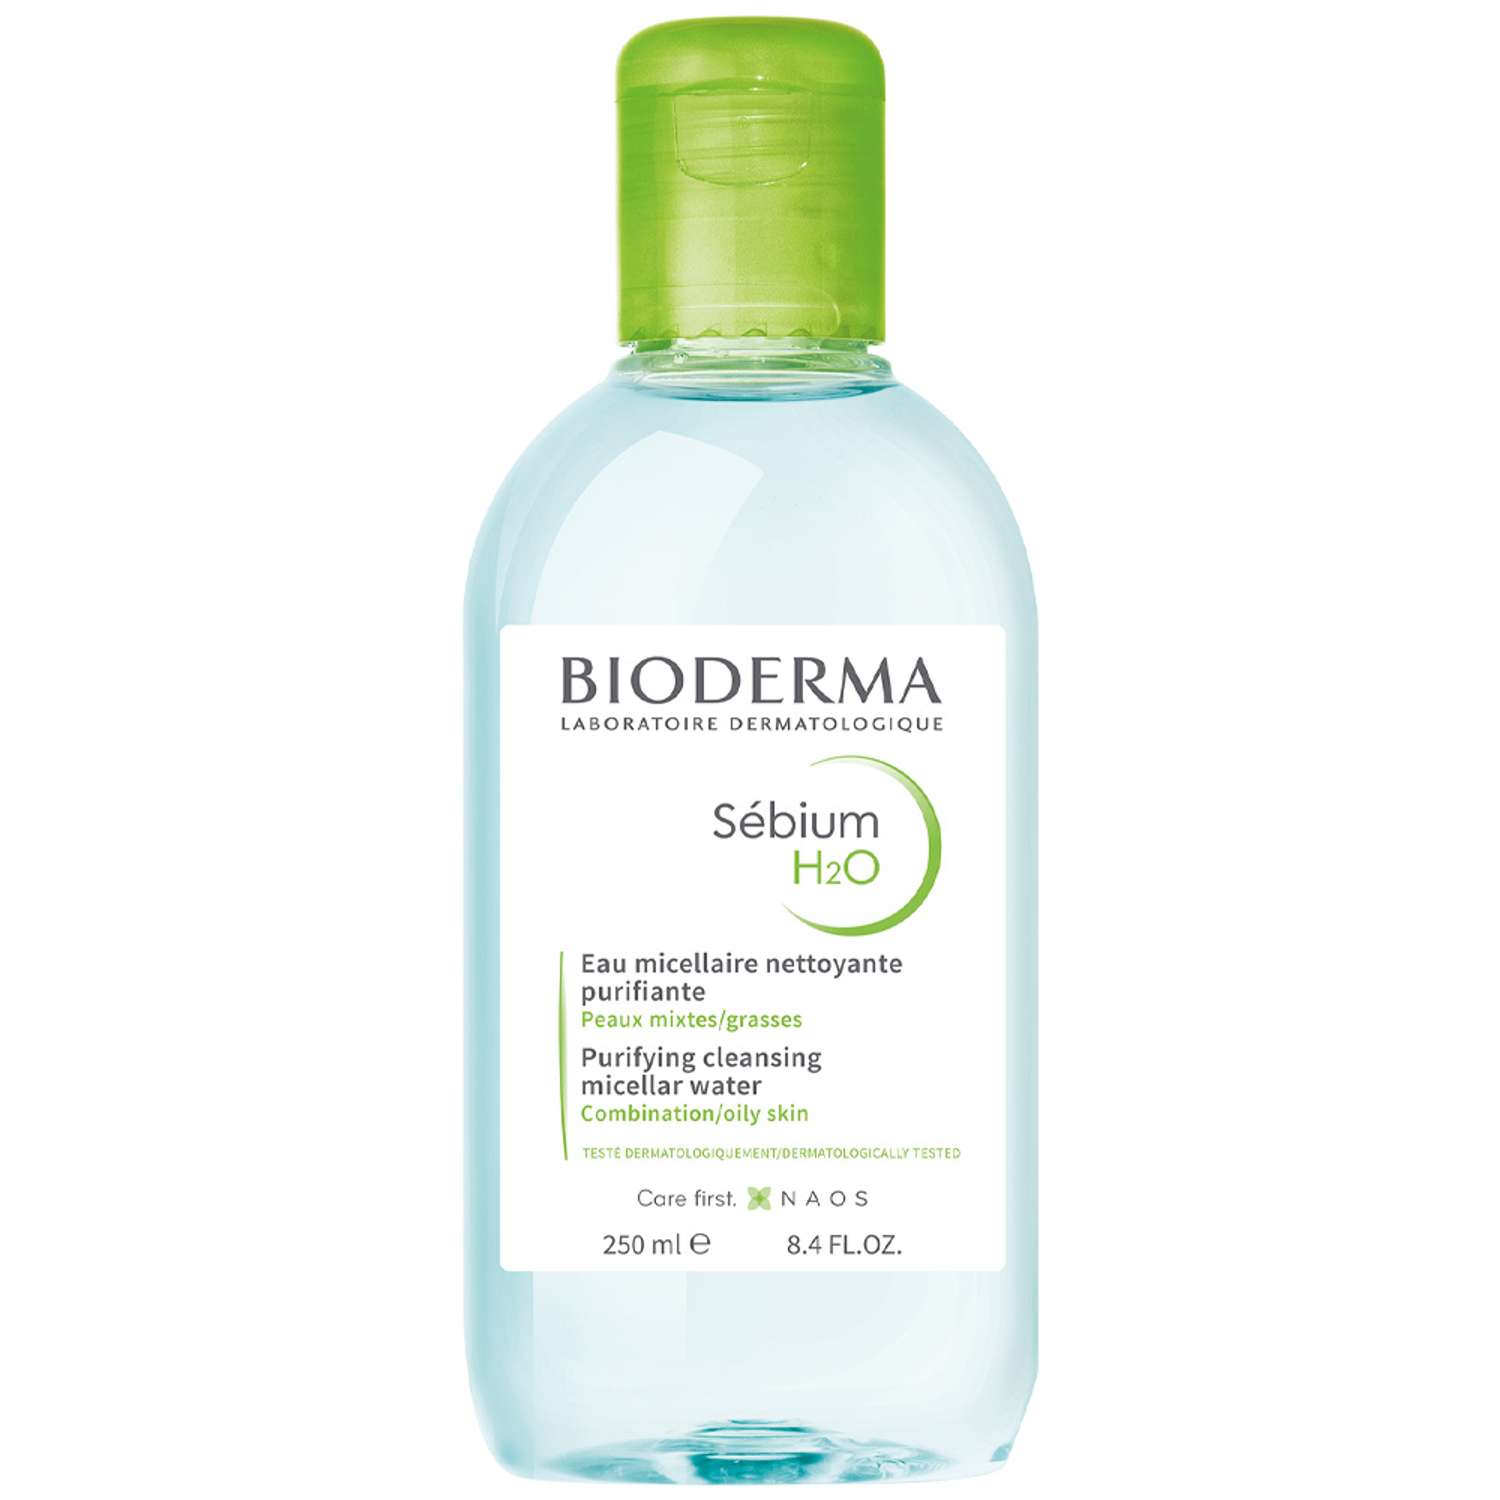 Мицеллярная вода H2O Bioderma Sebium очищающая для жирной и проблемной кожи лица 250 мл - фото 1